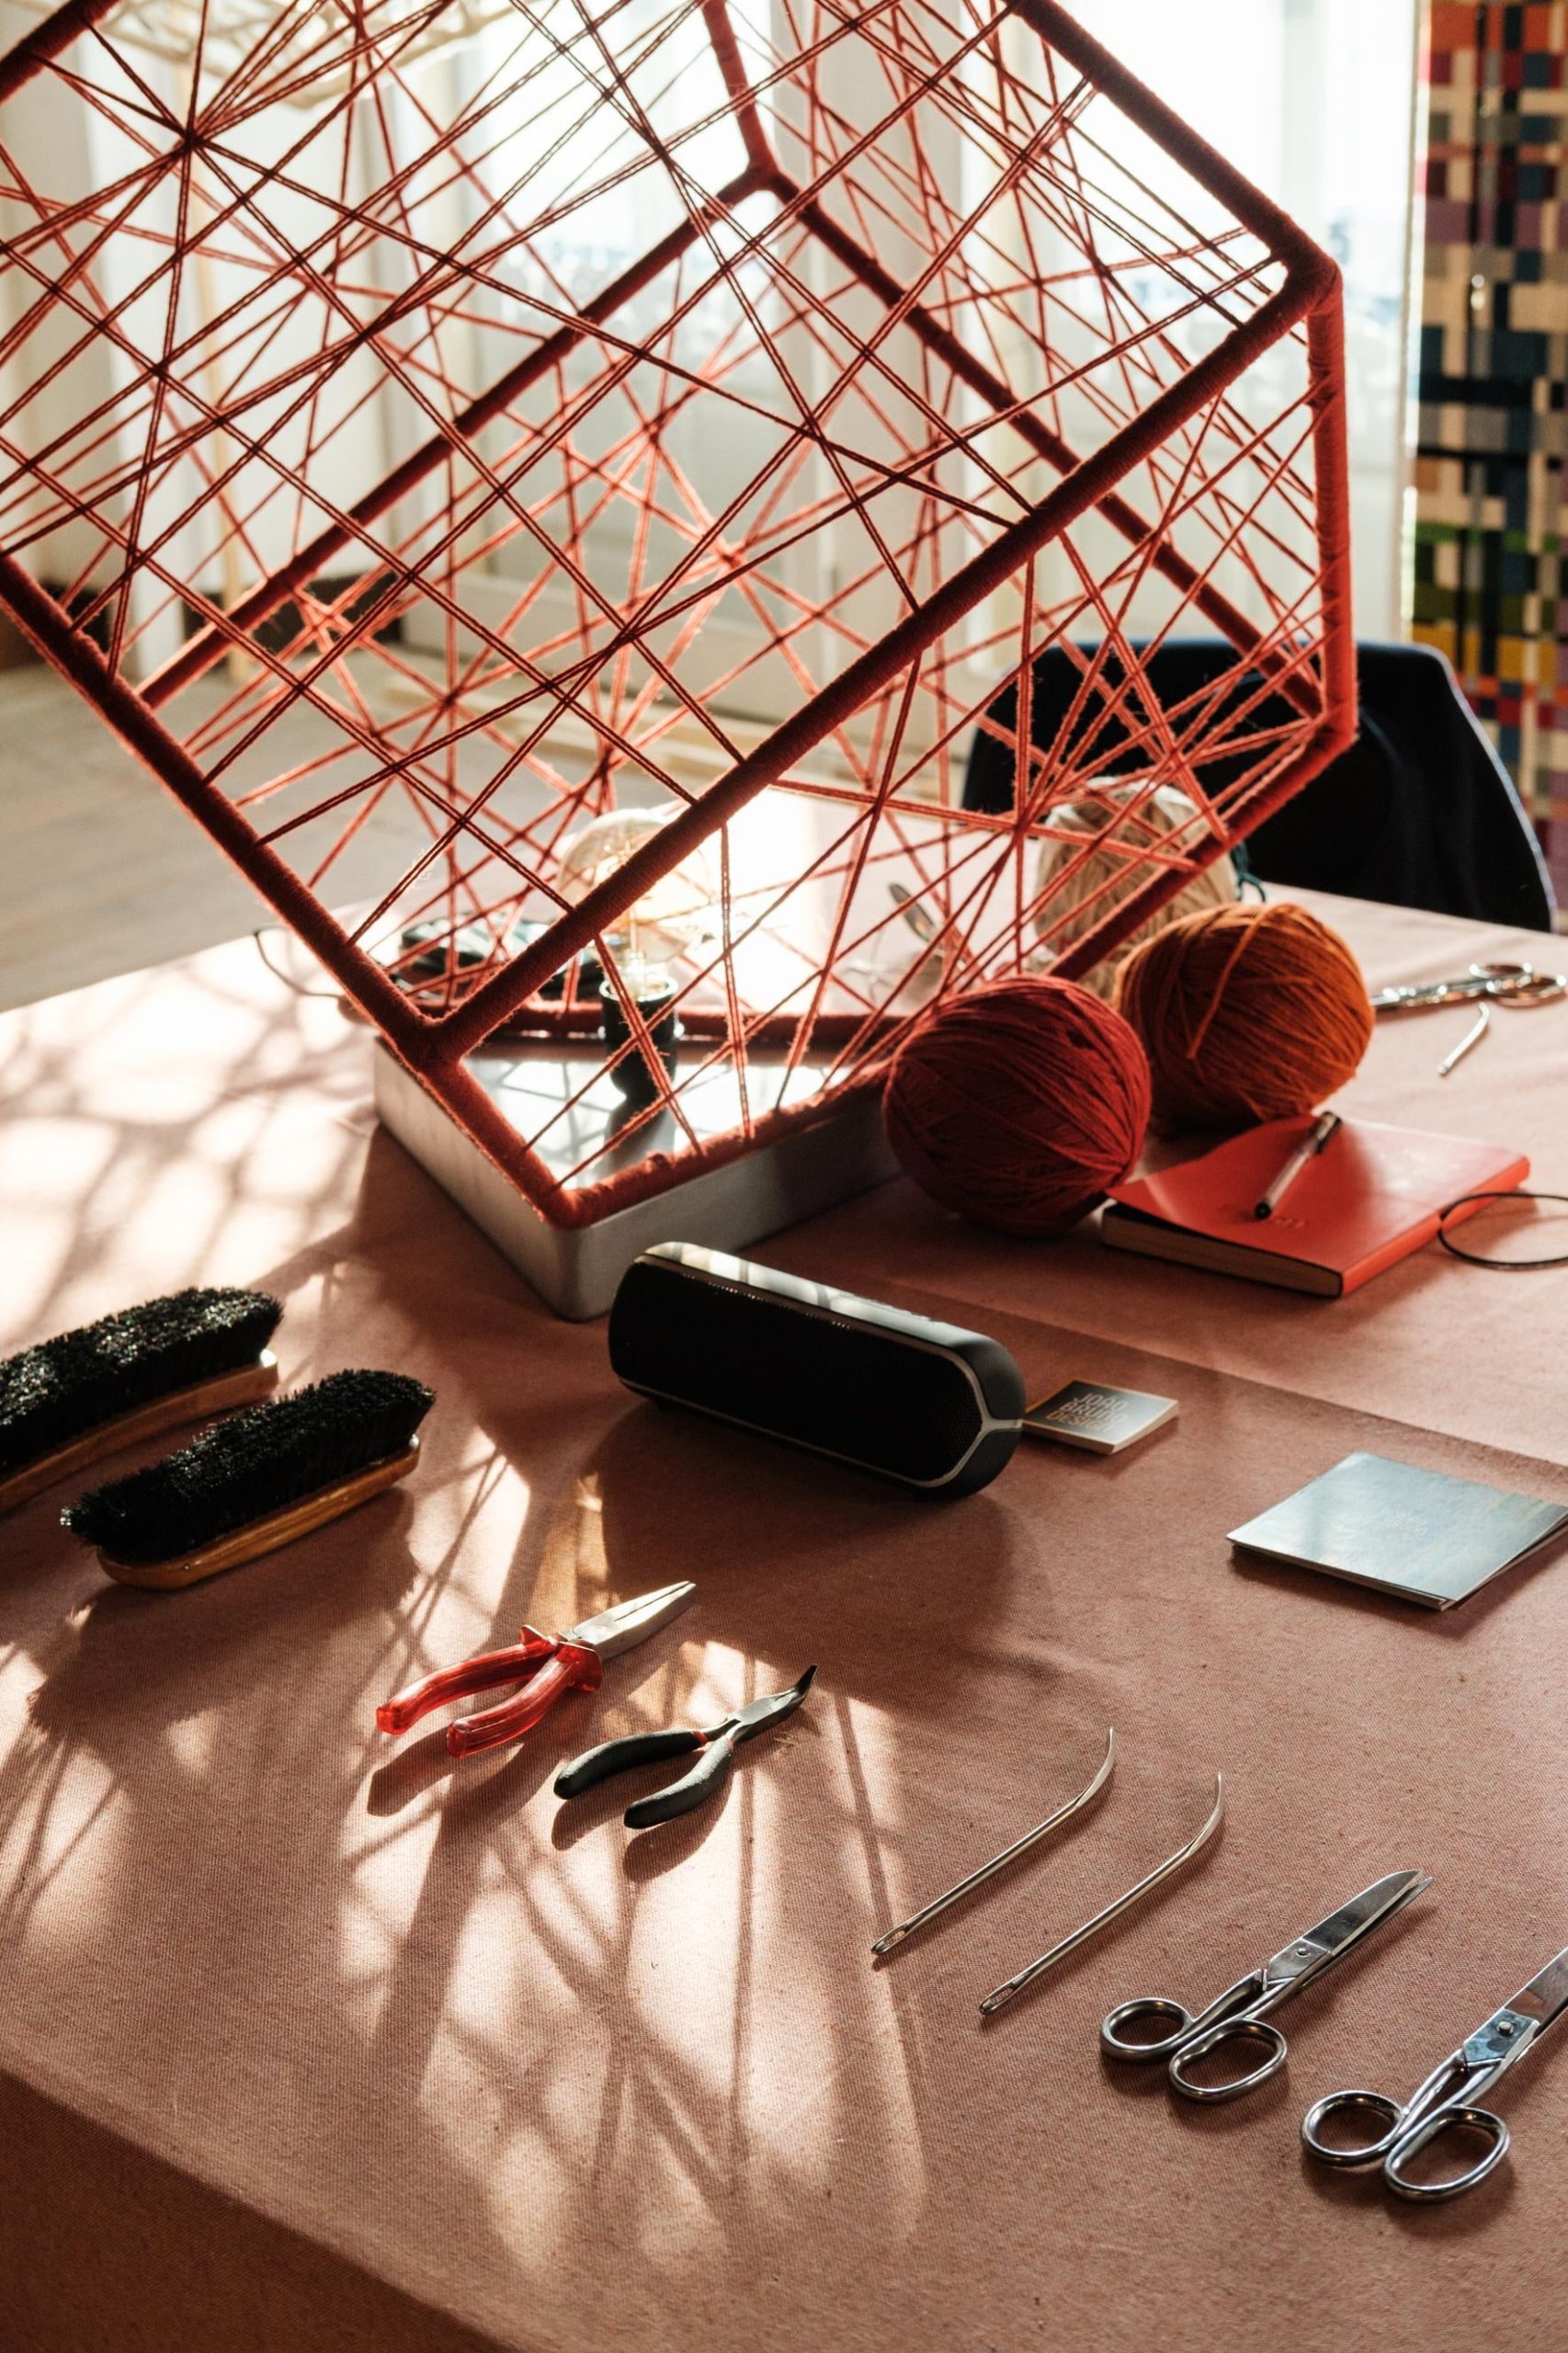 Mesa de trabalho com diferentes materiais, com foco na peça de madeira cúbica envolvida em fios de lã vermelhos.